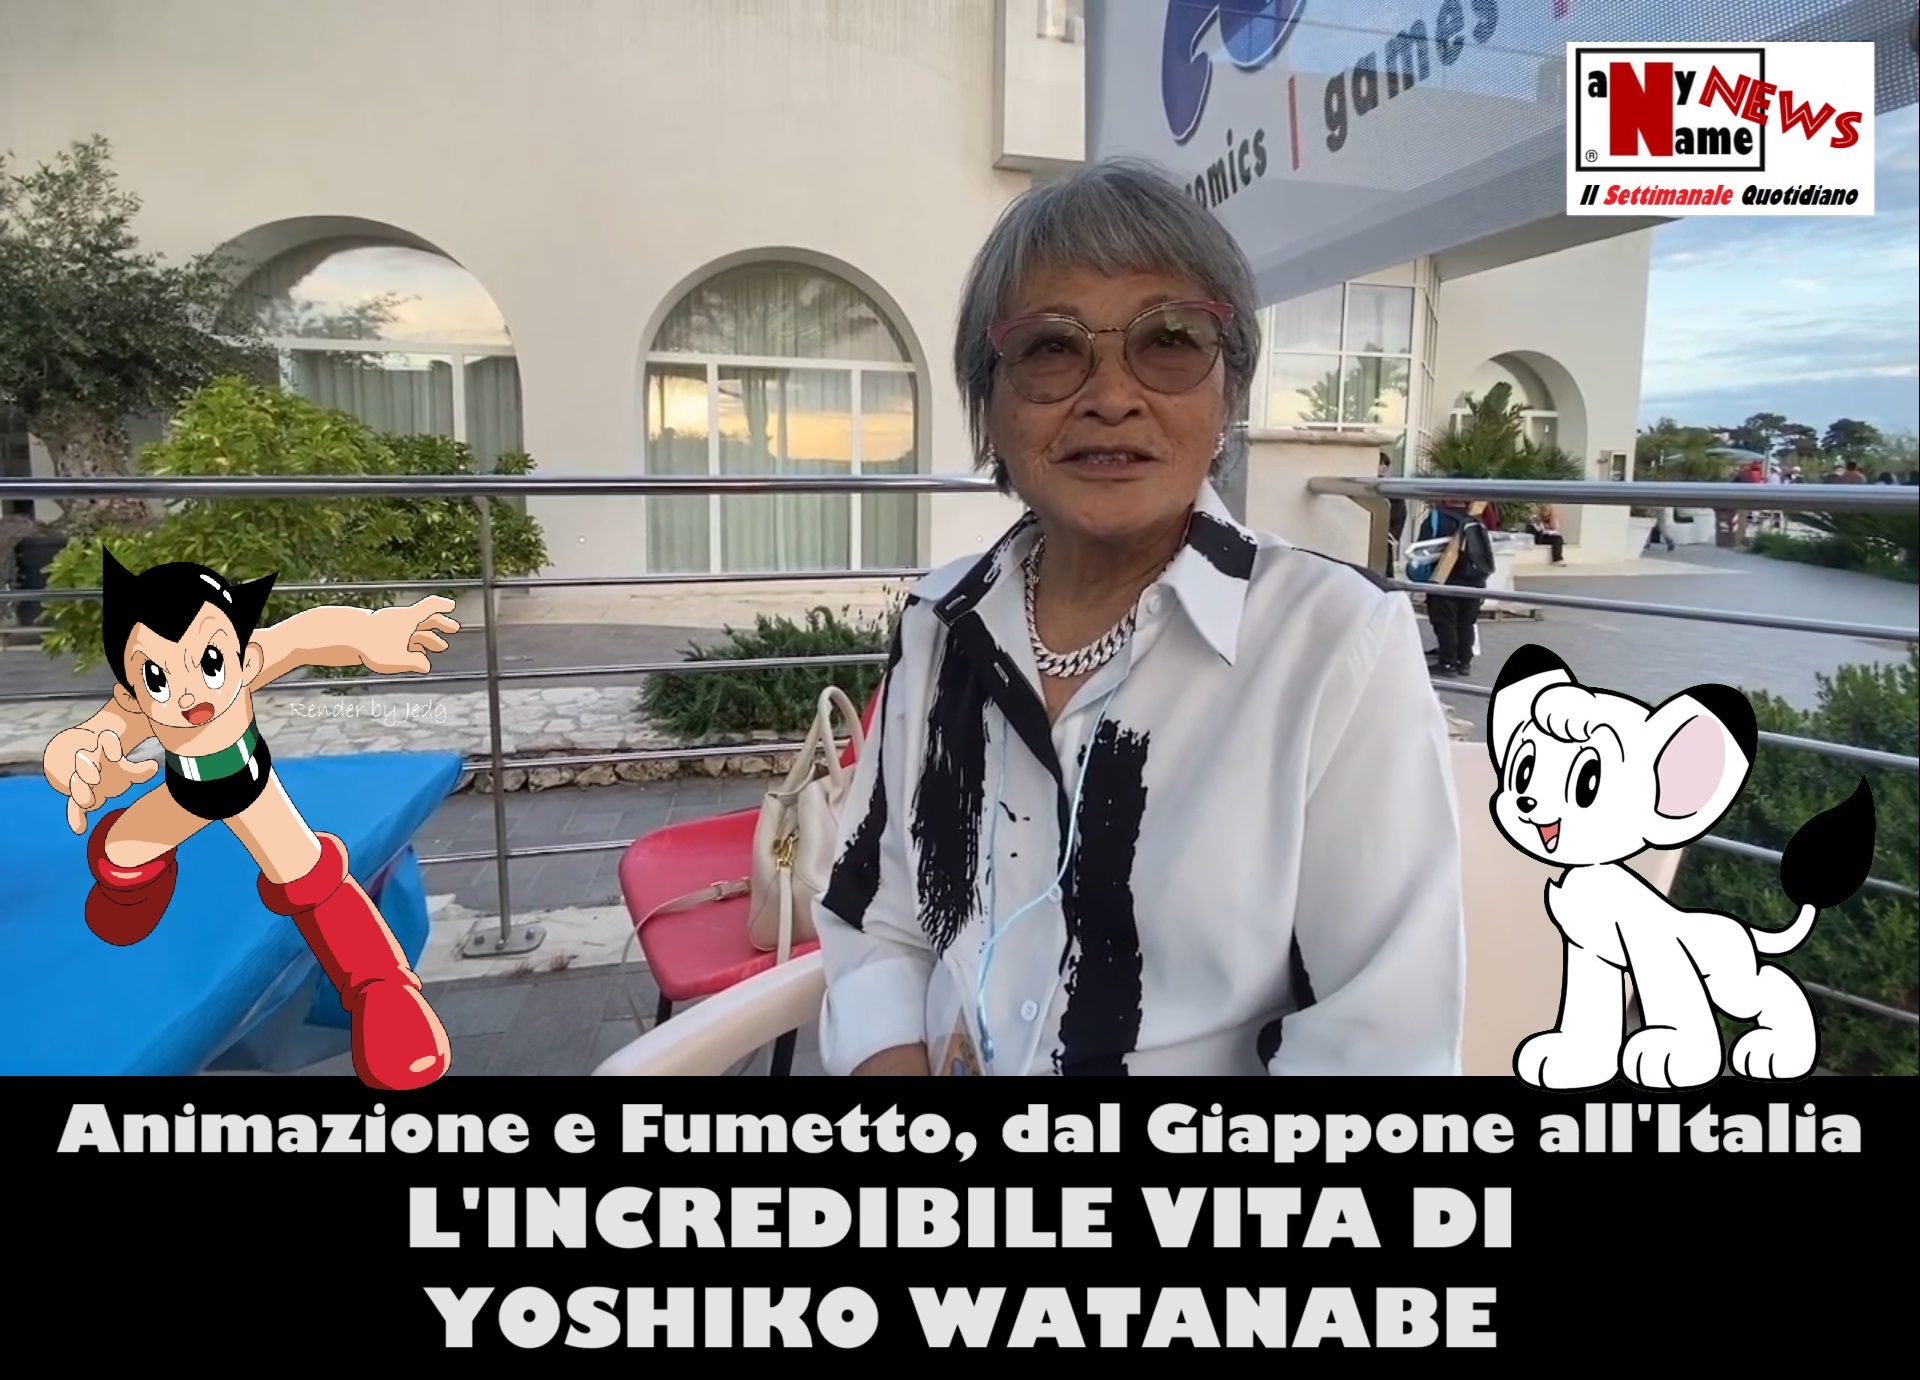 Animazione e Fumetto, dal Giappone all’Italia. L’incredibile vita di YOSHIKO WATANABE